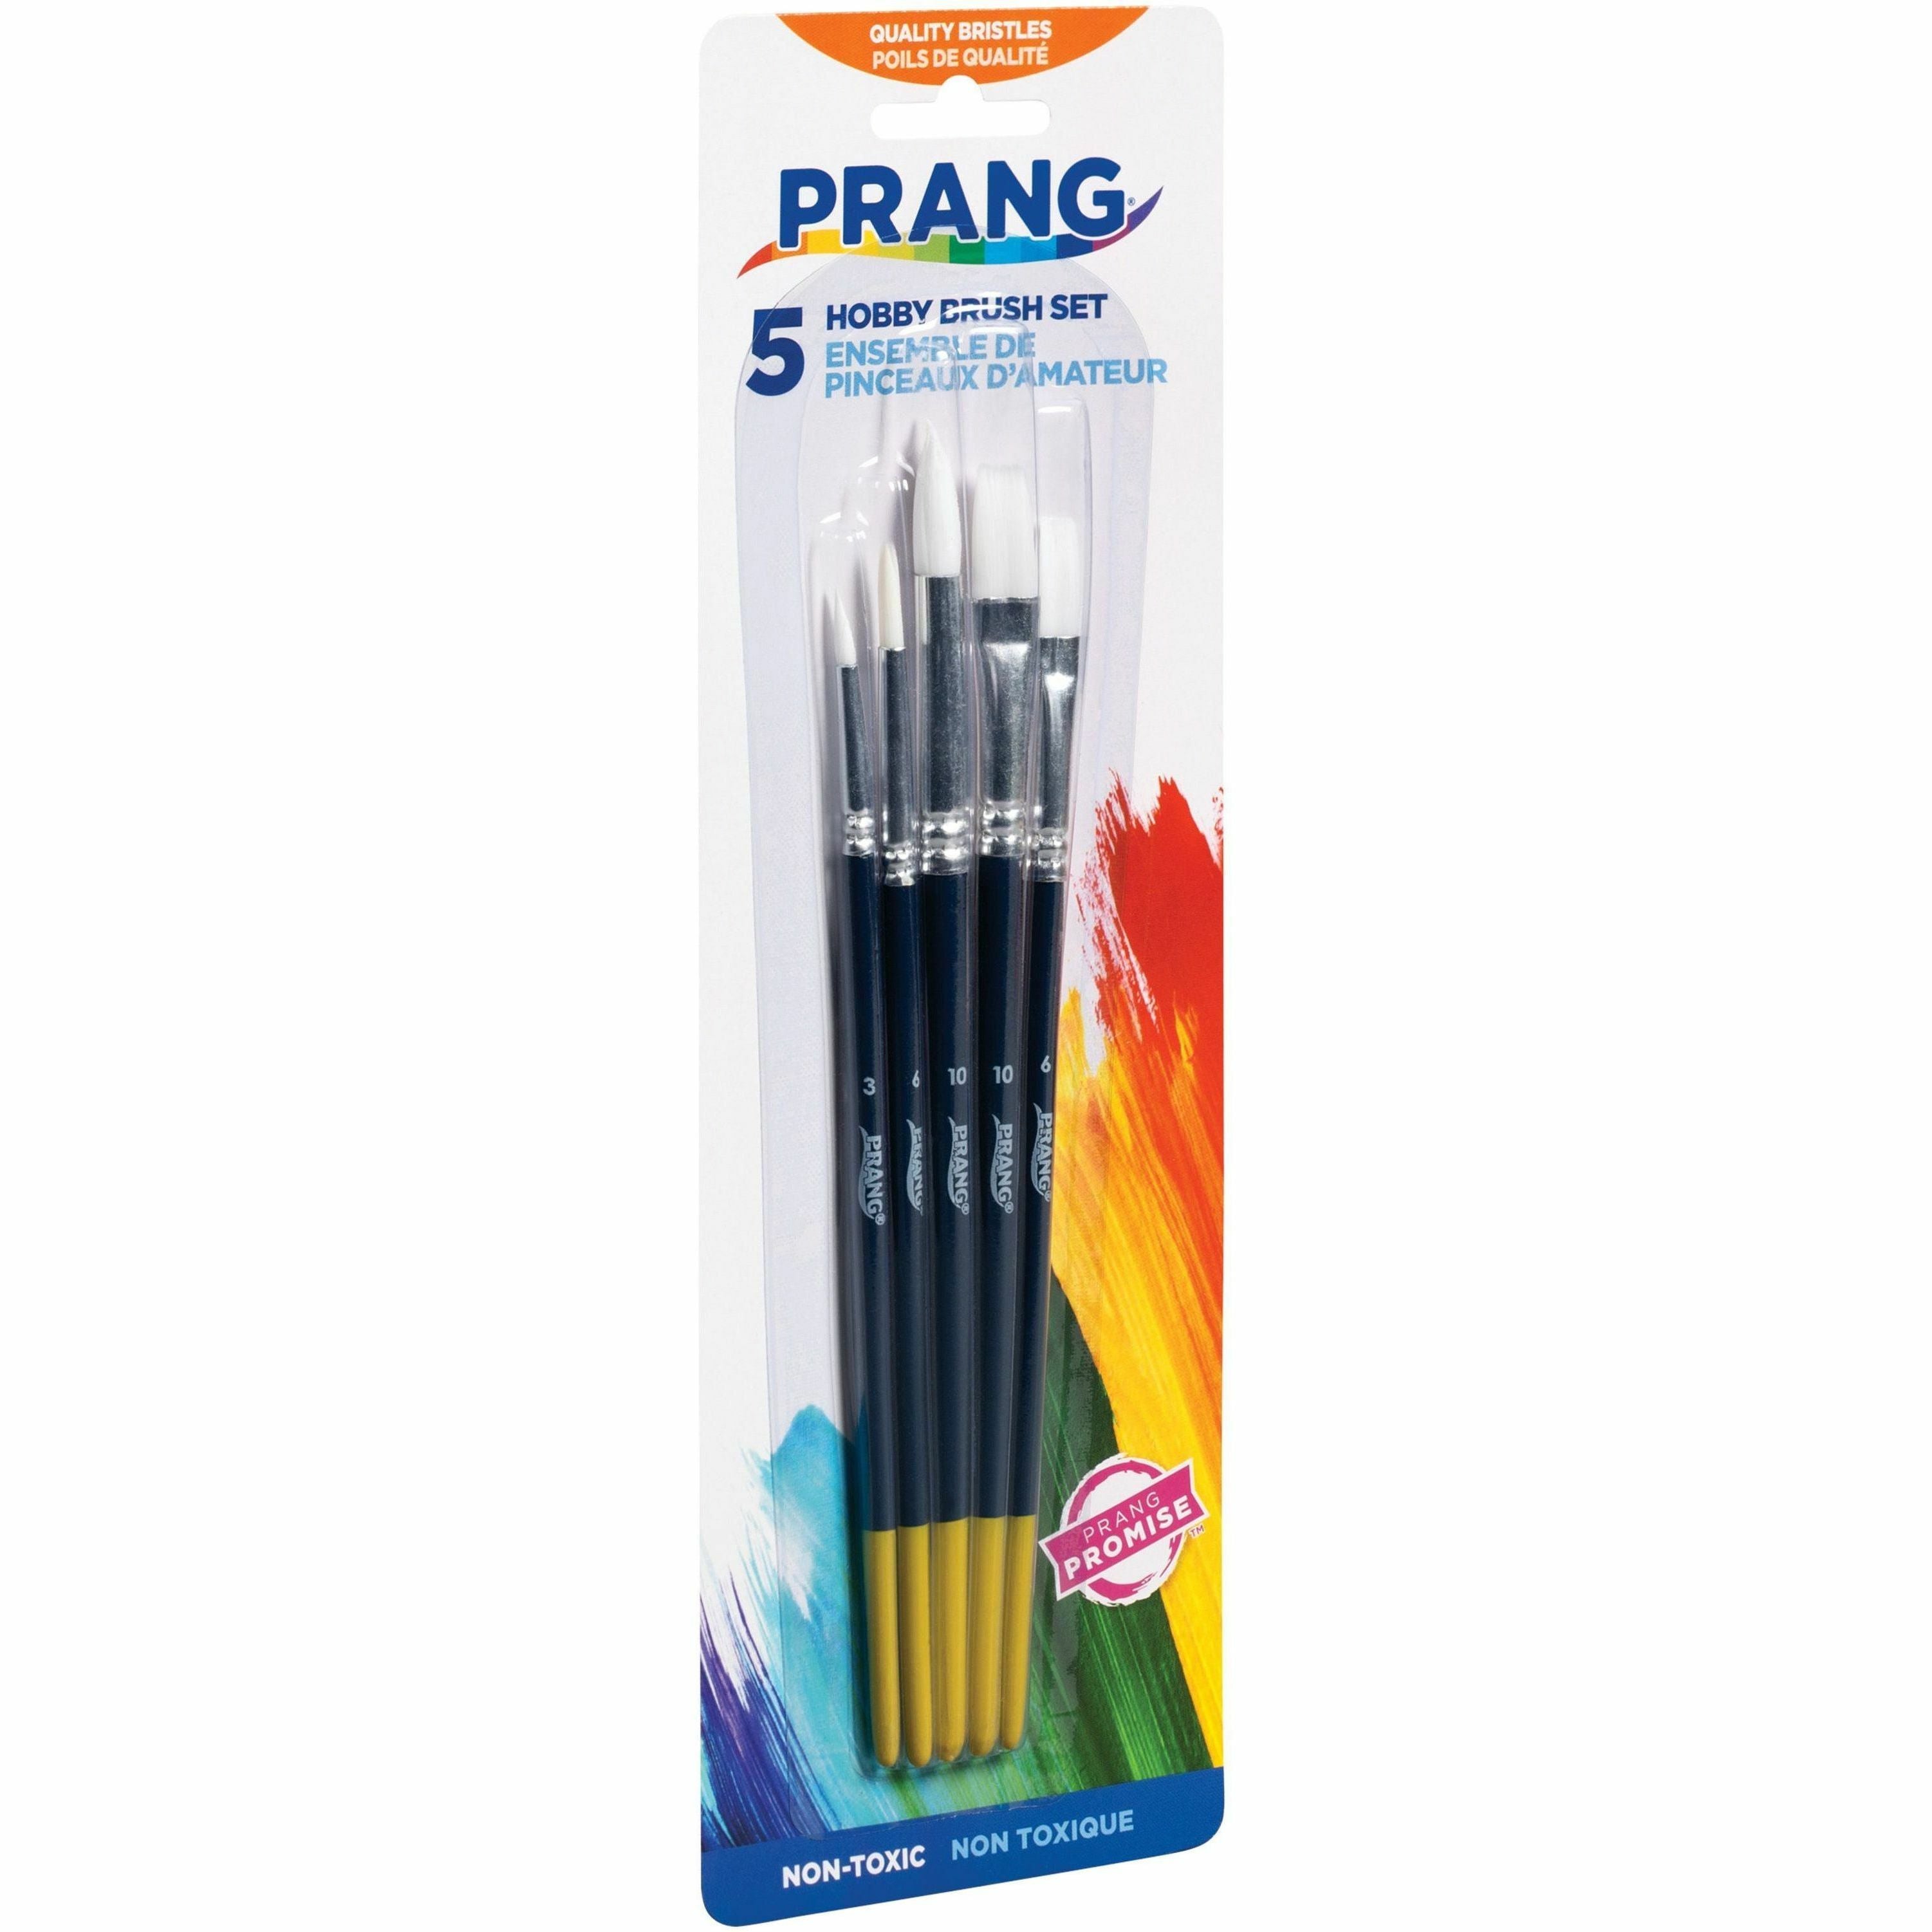 Prang Multipurpose Hobby Brush Set - 5 Brush(es) - Assorted Wood Red Handle - Aluminum Ferrule - 